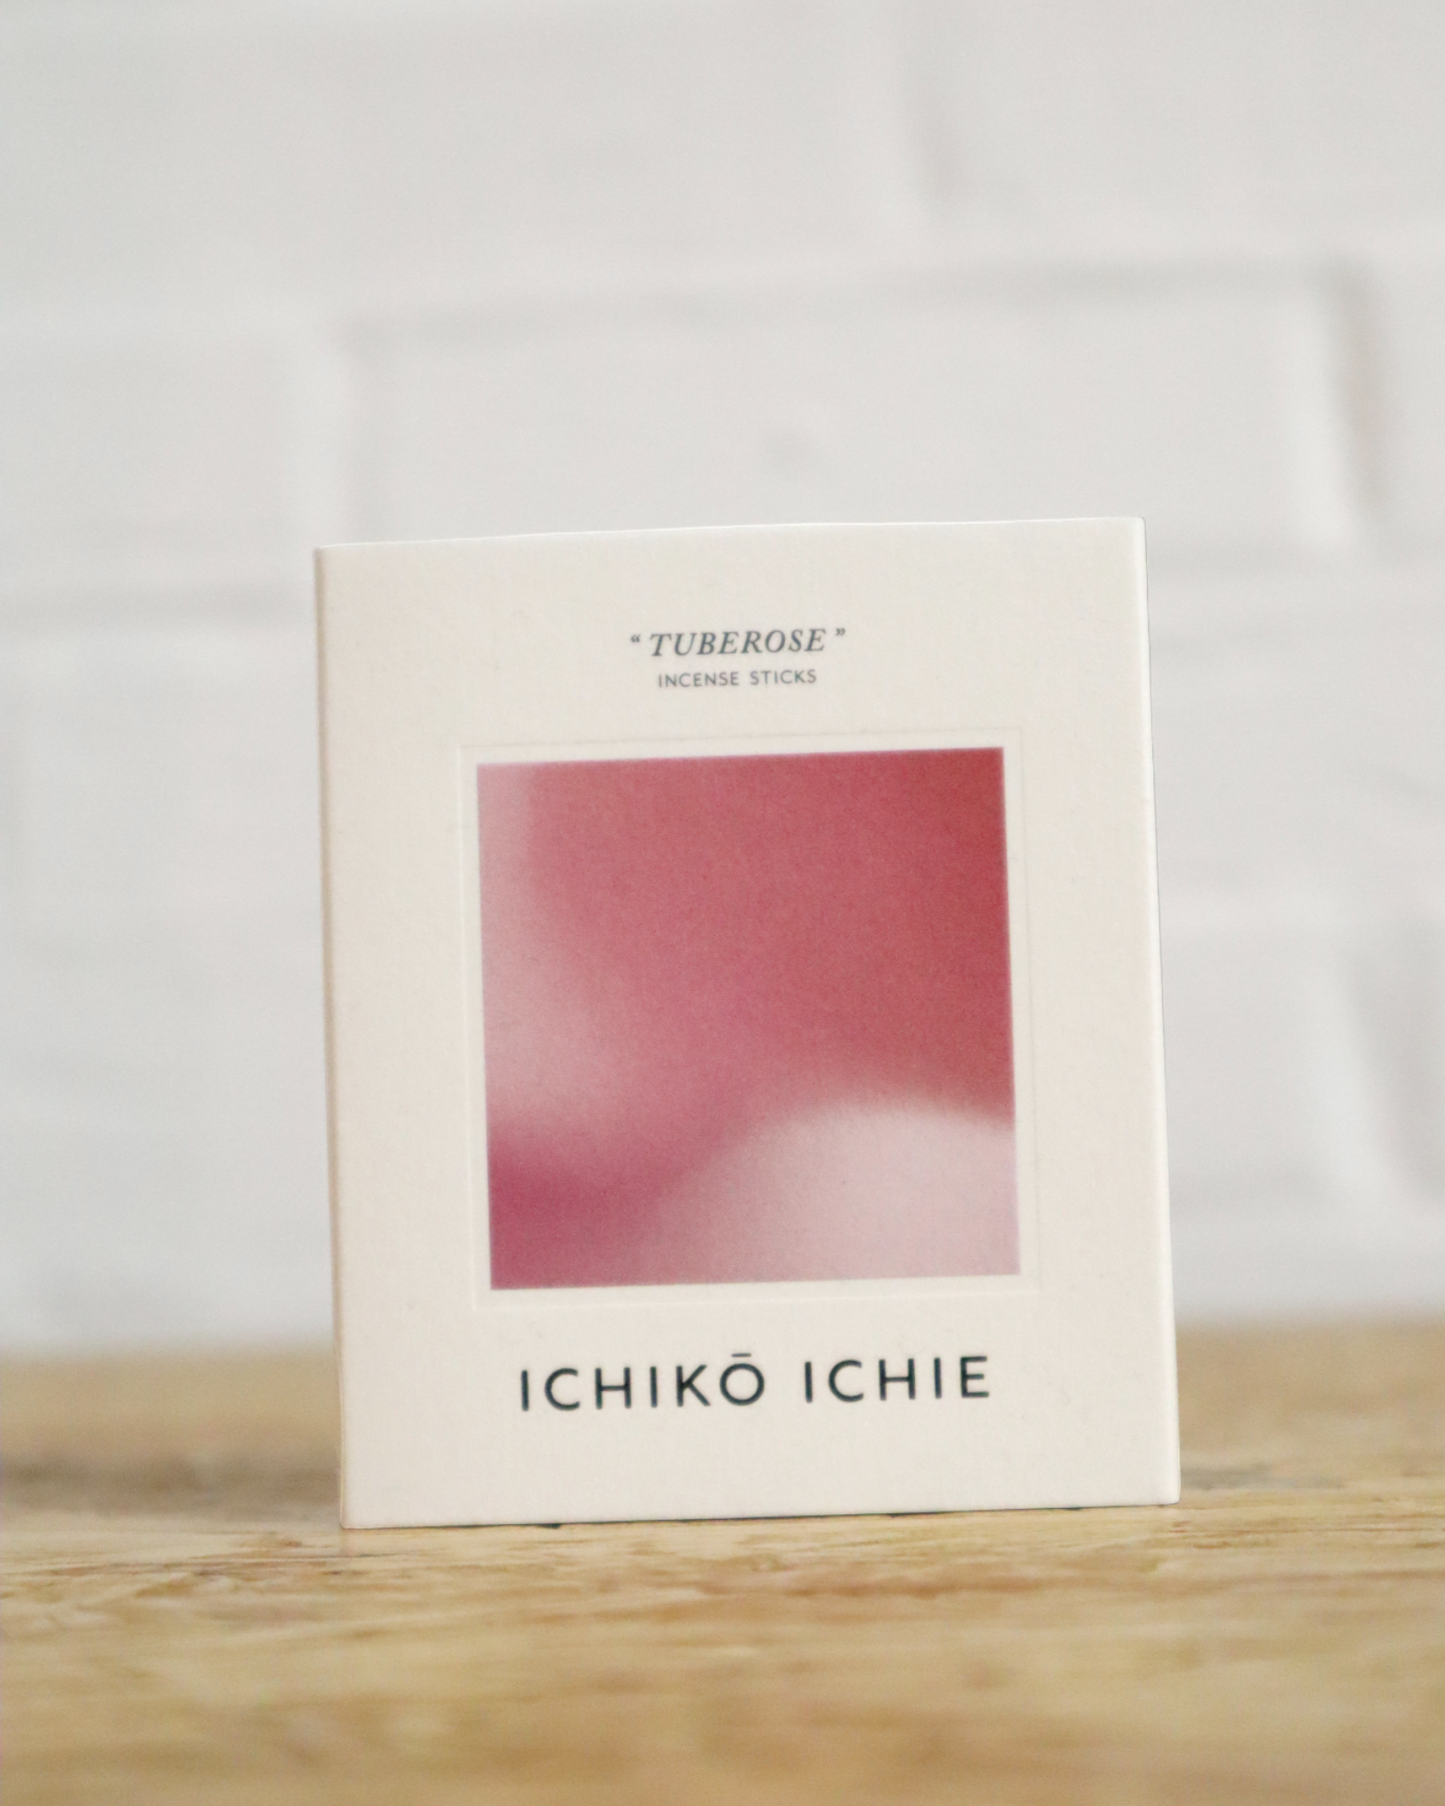 
                  
                    ICHIKO ICHIE Incense "TUBEROSE"
                  
                